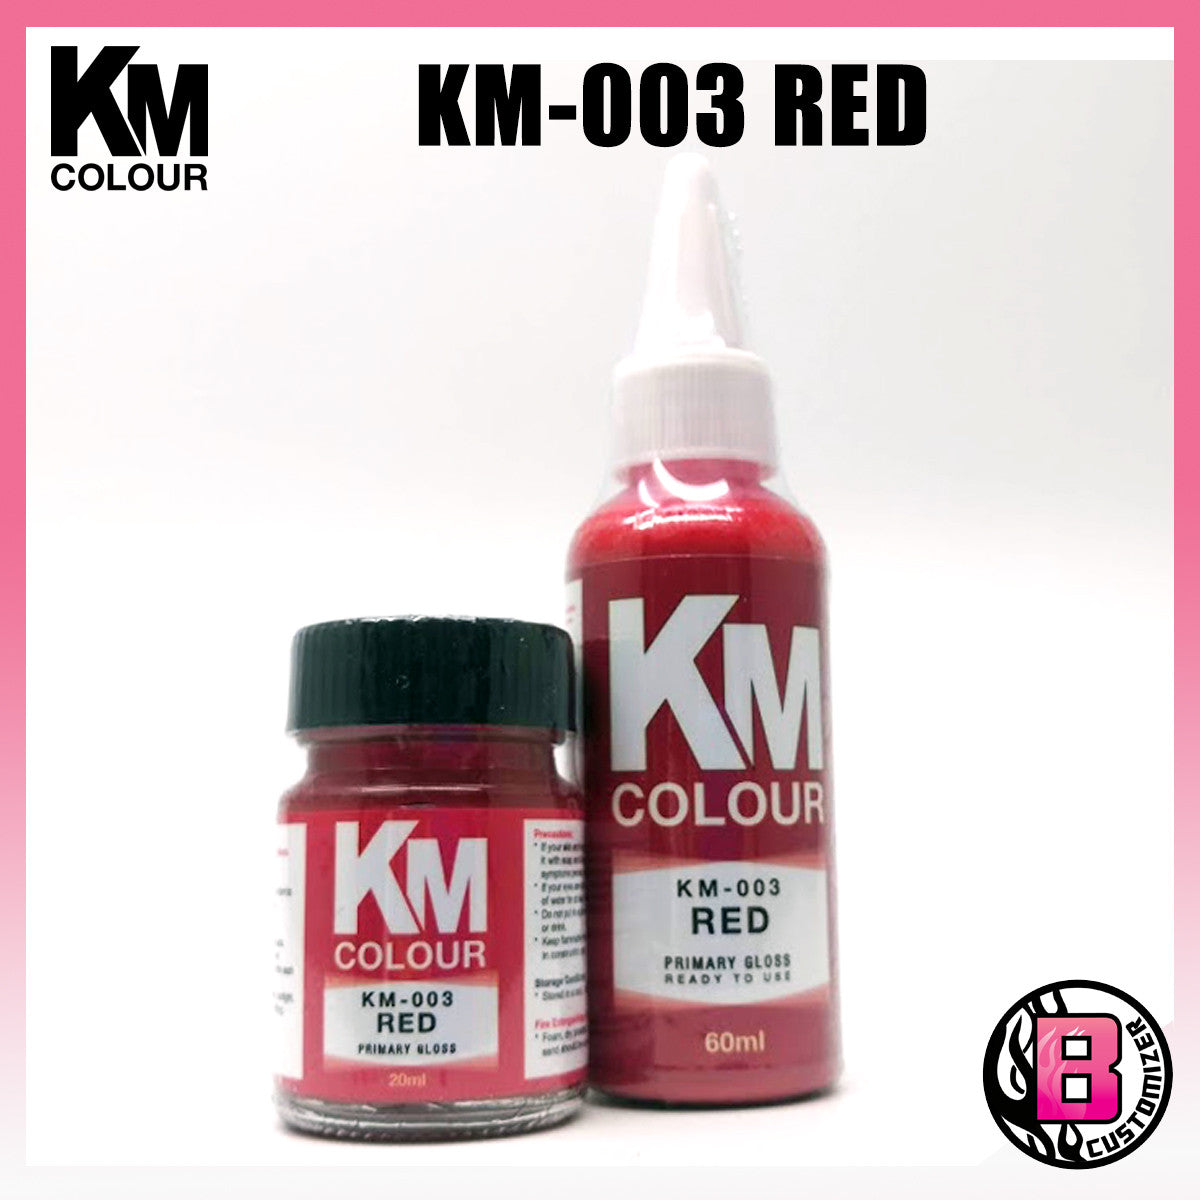 KM Colour KM-003 Red